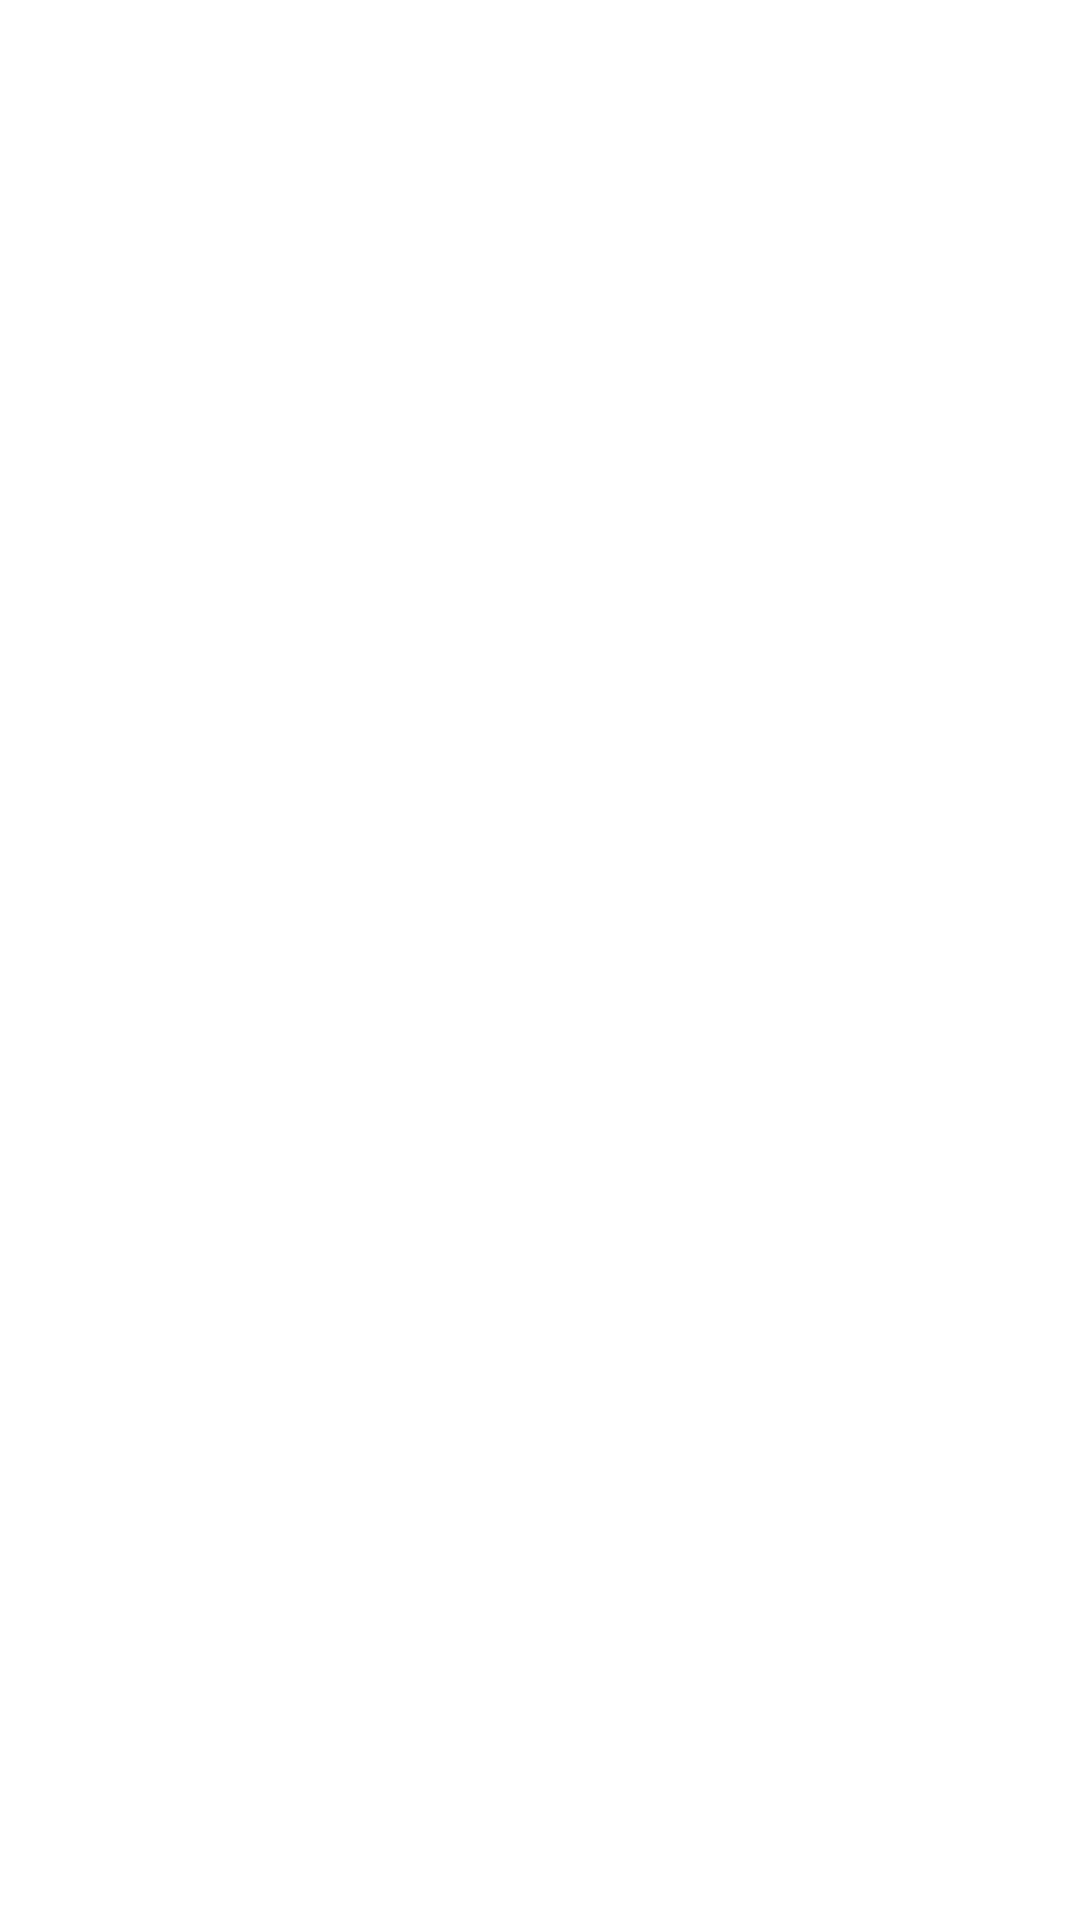 text: Hidden Gems, A Font For Luxury Brands